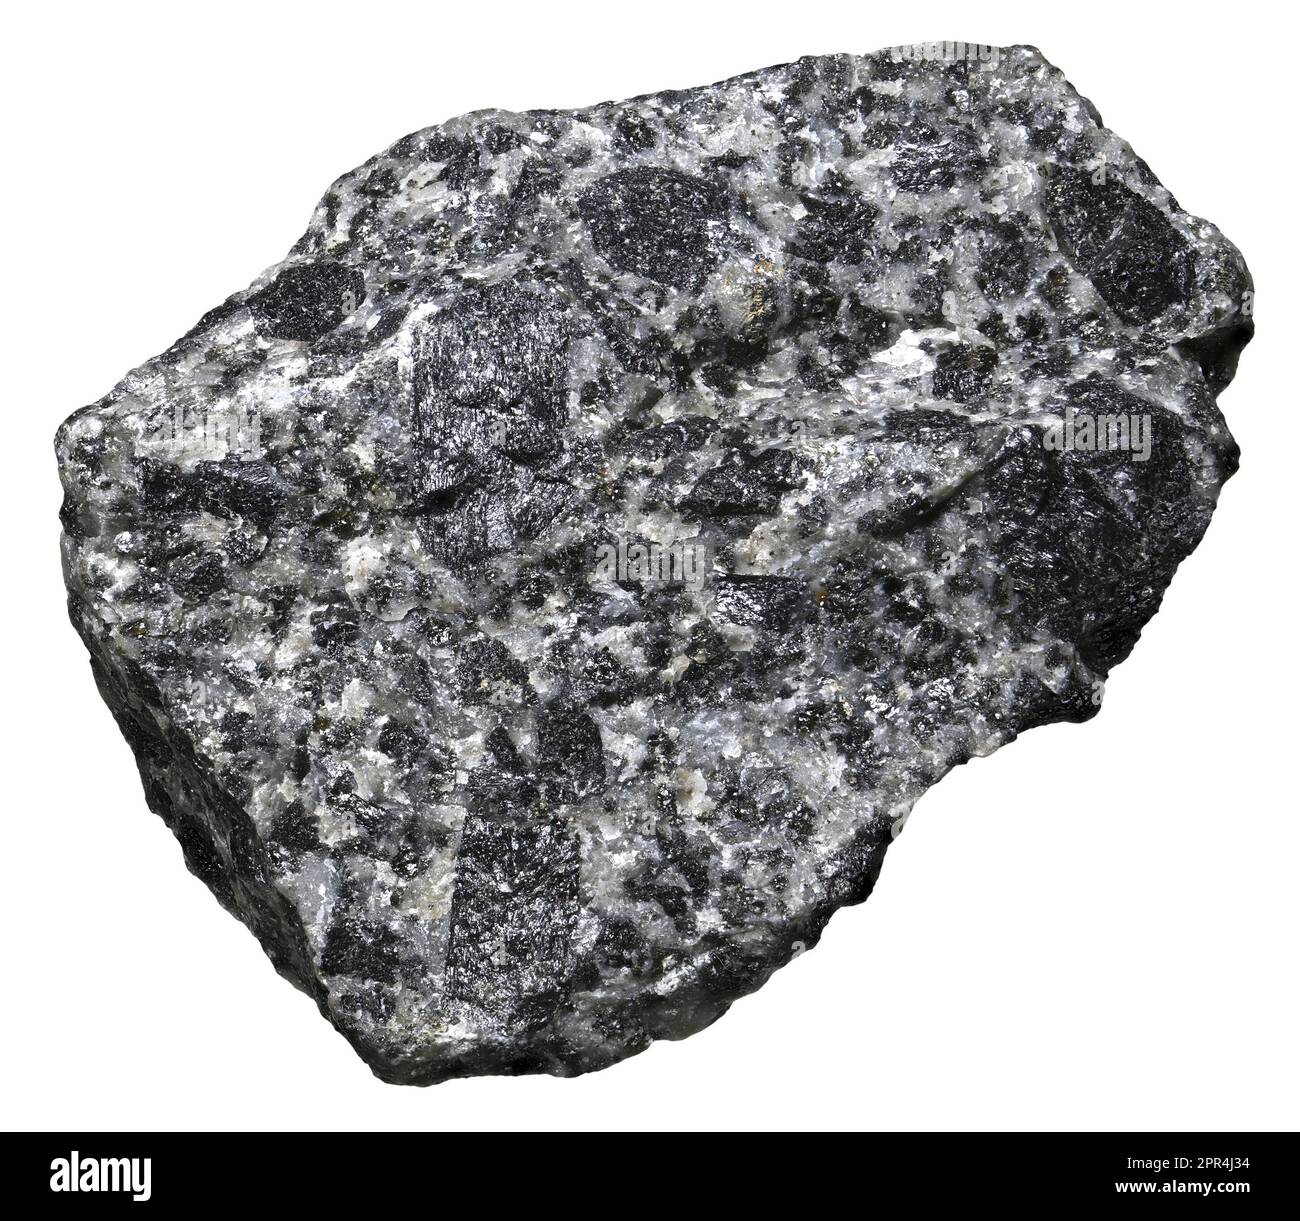 Augite (Norway) Silicate of calcium, magnesium, iron, titanium and aluminium. [c1.5cm across] Stock Photo